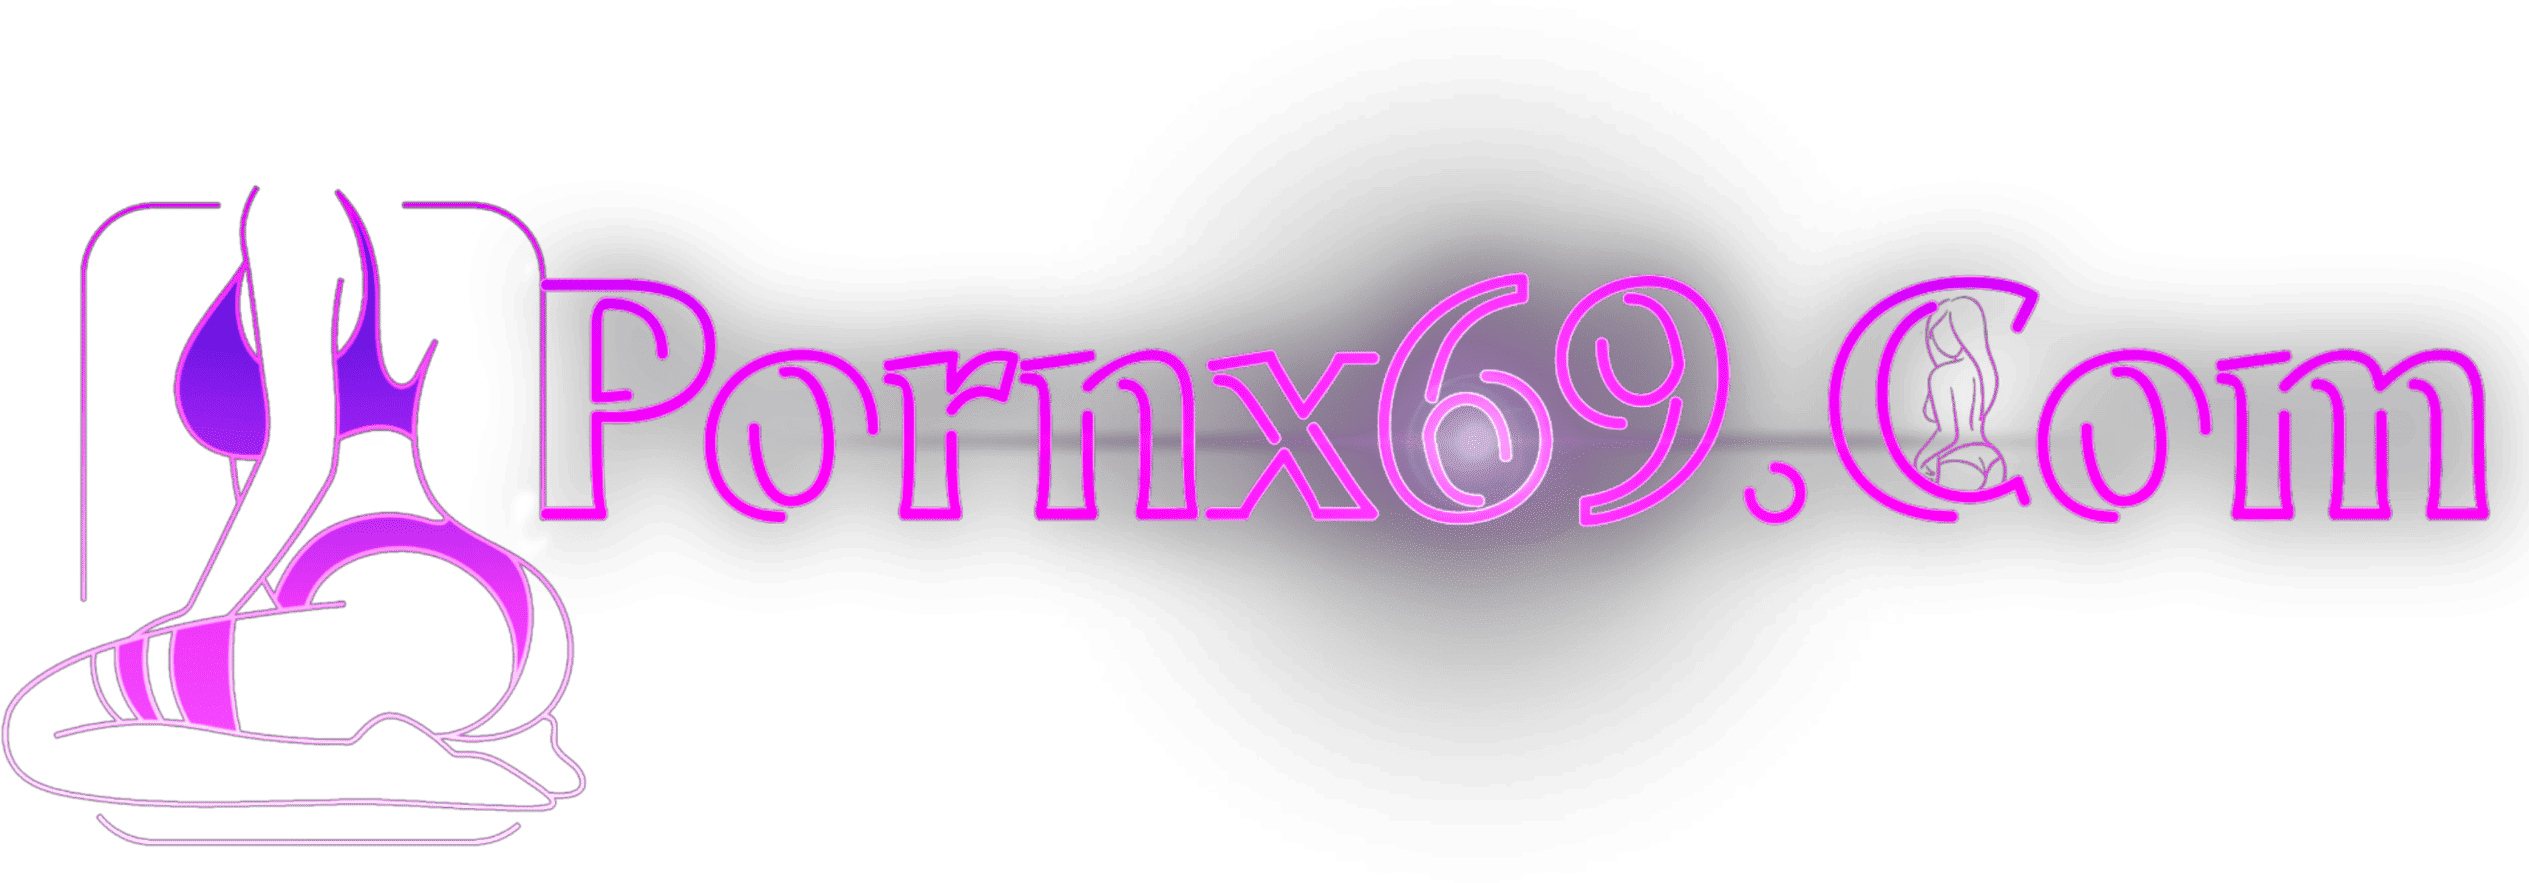 PornX69 logo